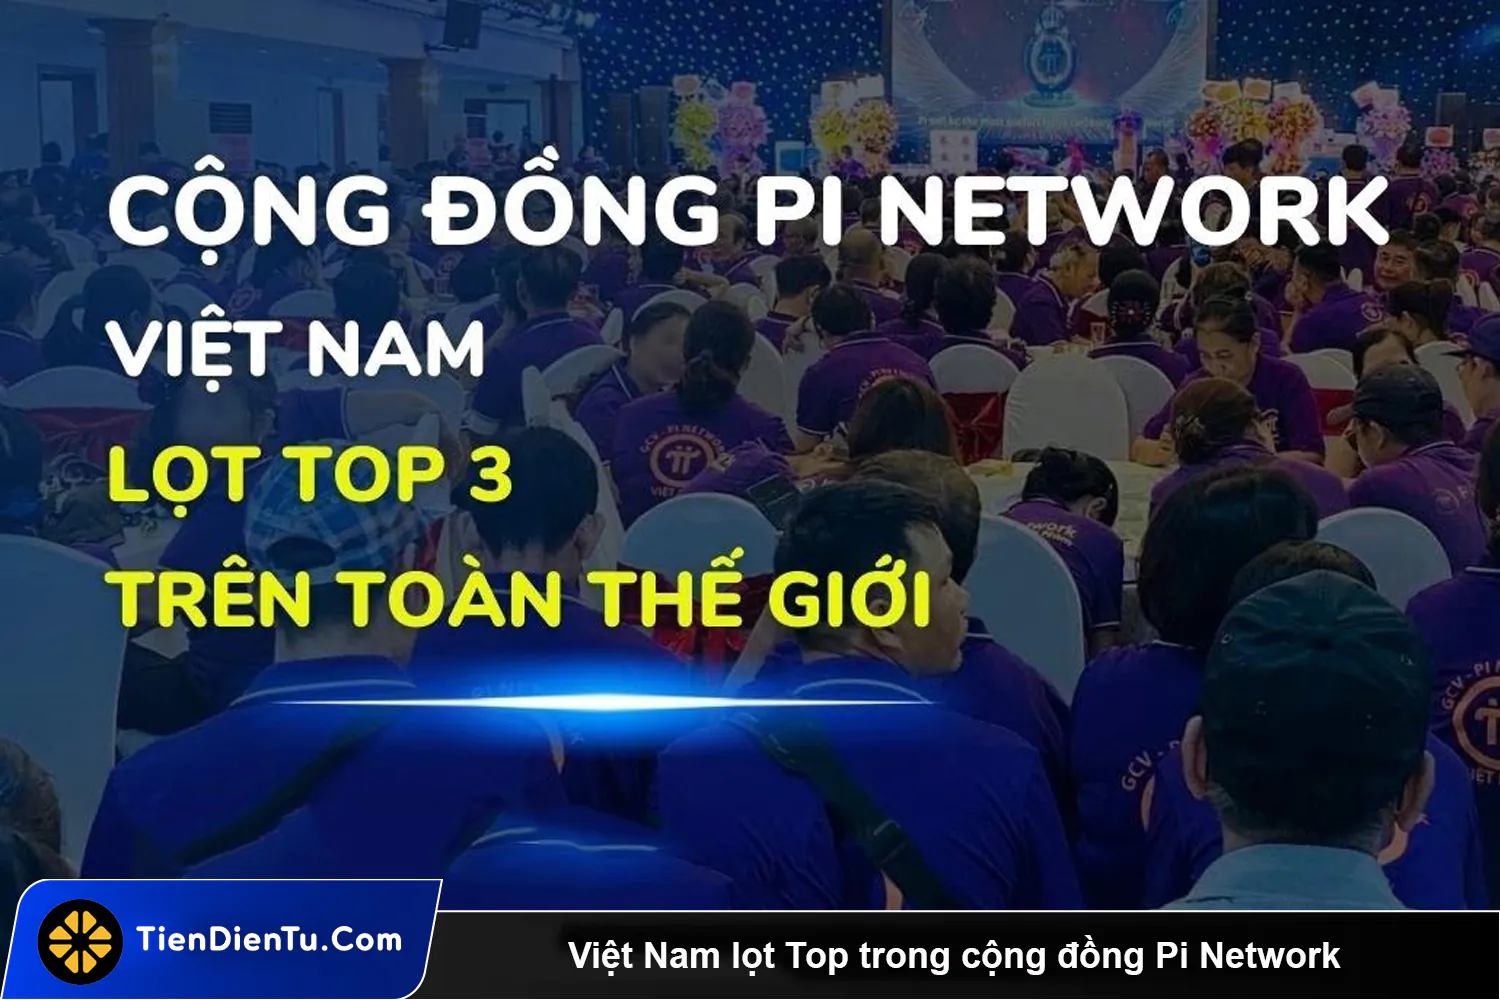 Việt Nam Lọt Top Trong Cộng đồng Pi Network